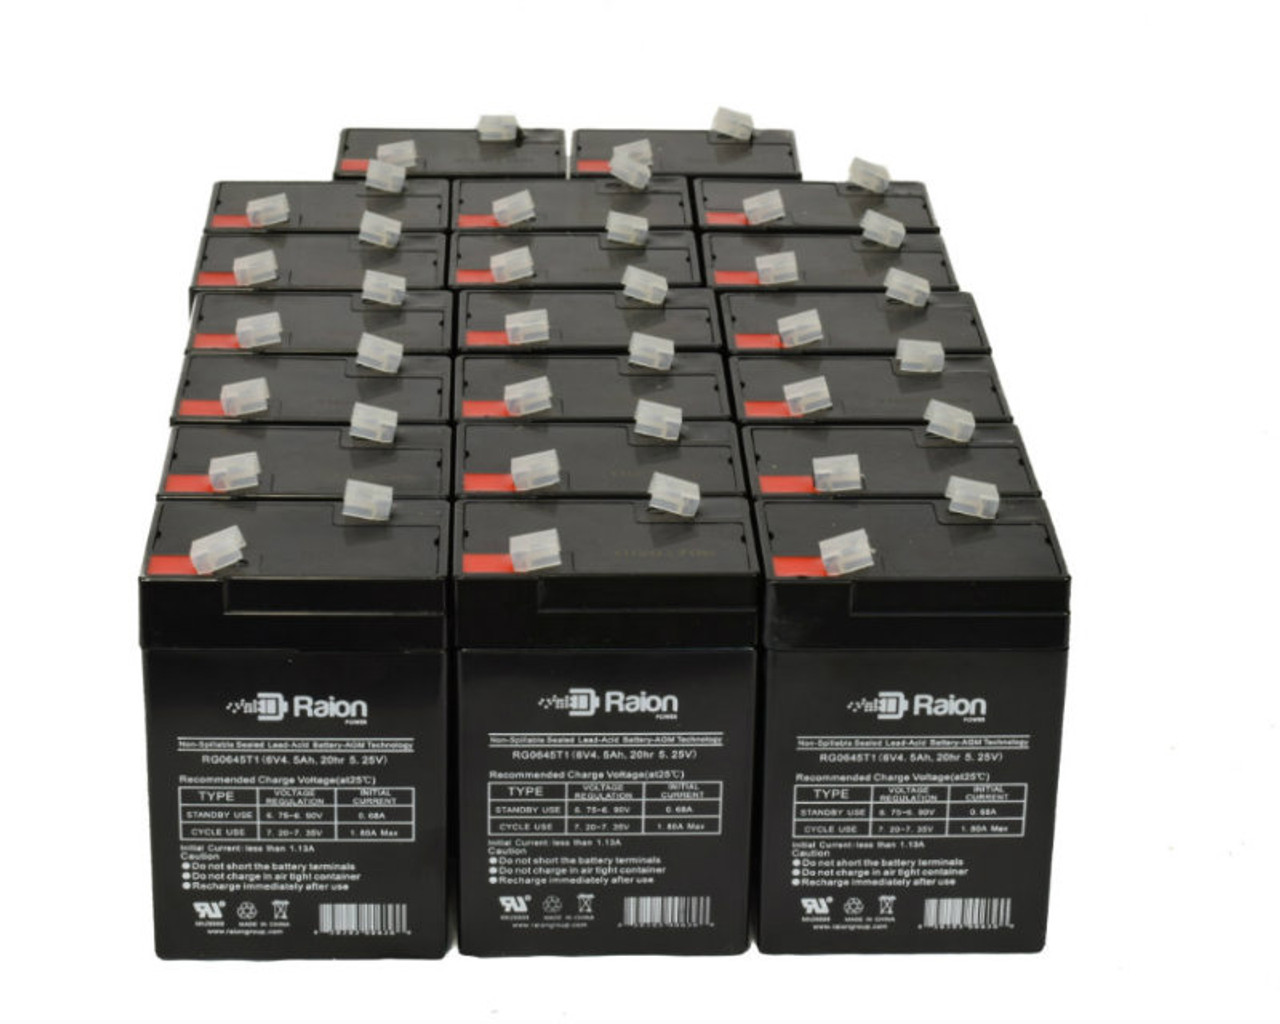 Raion Power 6 Volt 4.5Ah RG0645T1 Replacement Battery for Zibak ZP4.5-6 - 20 Pack